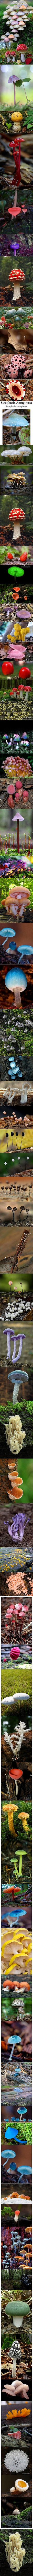 桃生牙晓采集到蘑菇